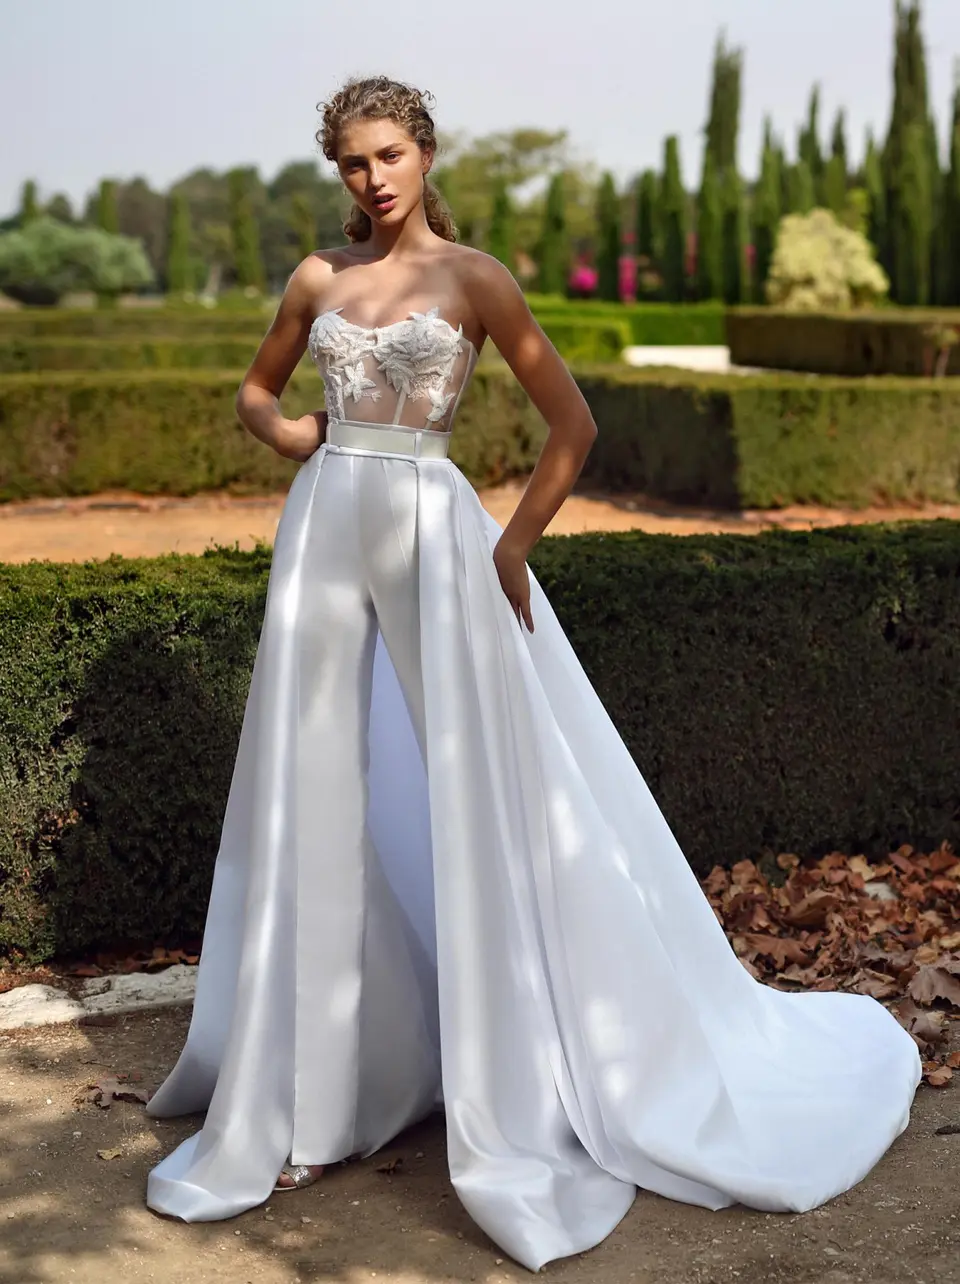 Стильное свадебное платье